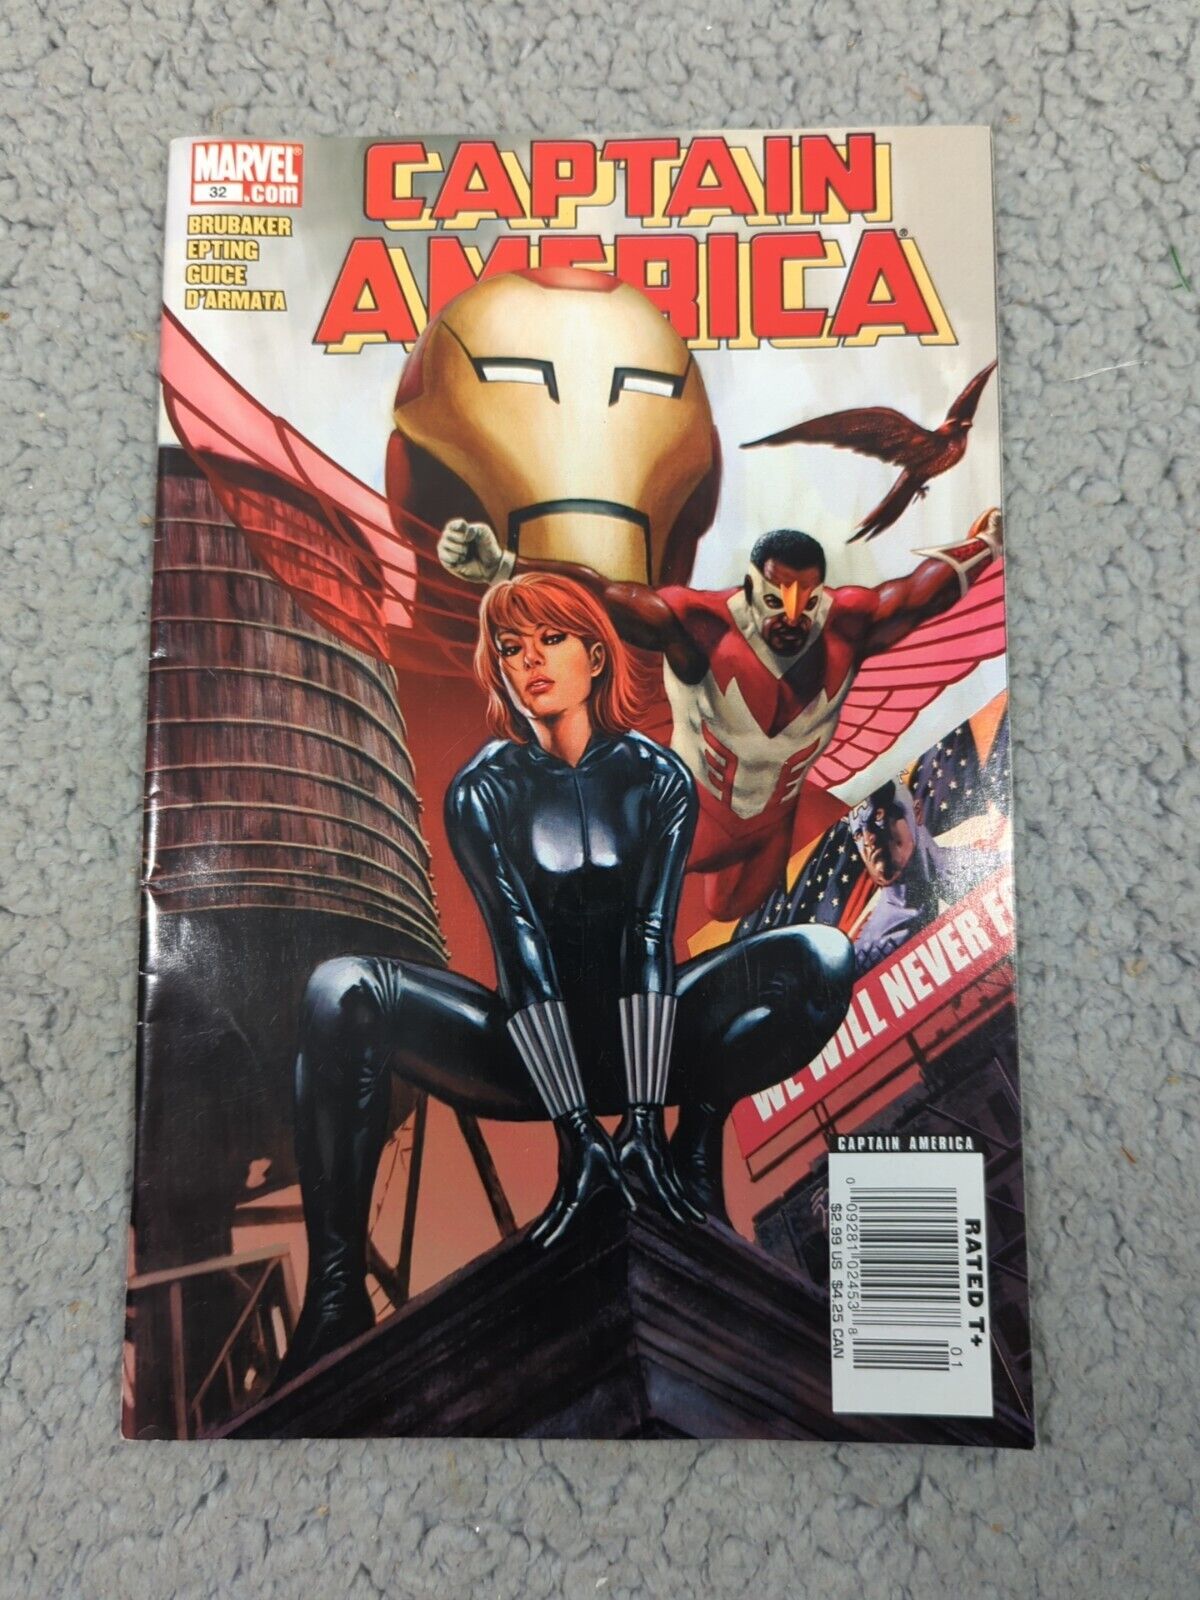 Captain America (Volume 5) #32 Ed Brubaker Winter Soldier Falcon Iron Man 